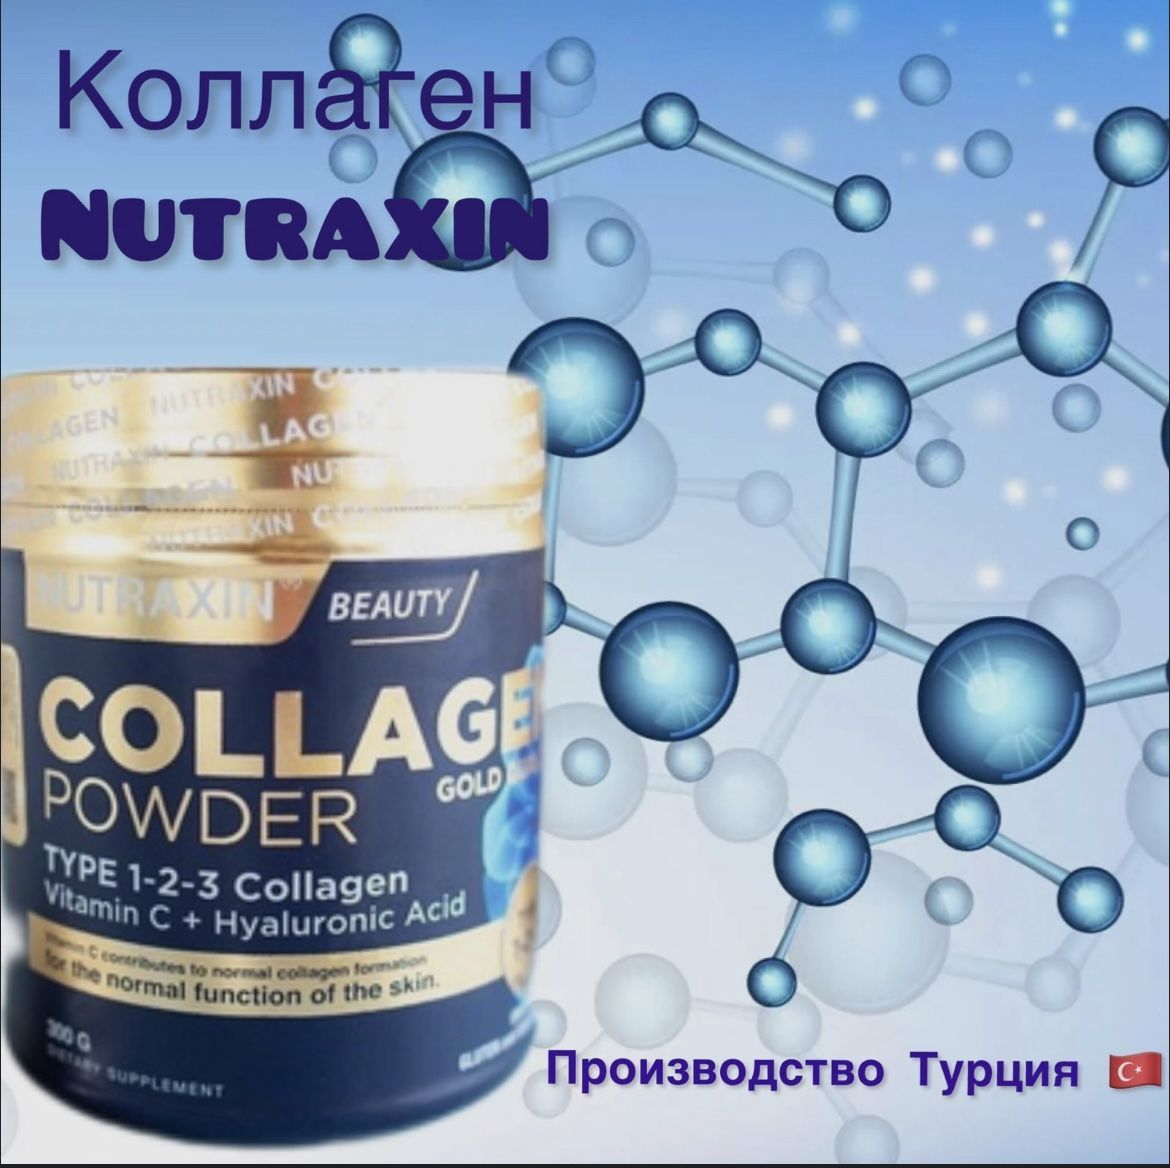 Растворимый коллаген. Nutraxin Collagen Gold quality 1-2-3 Collagen. Nutraxin Collagen Gold 300. Коллаген Nutraxin Beauty. Коллаген растворимый.